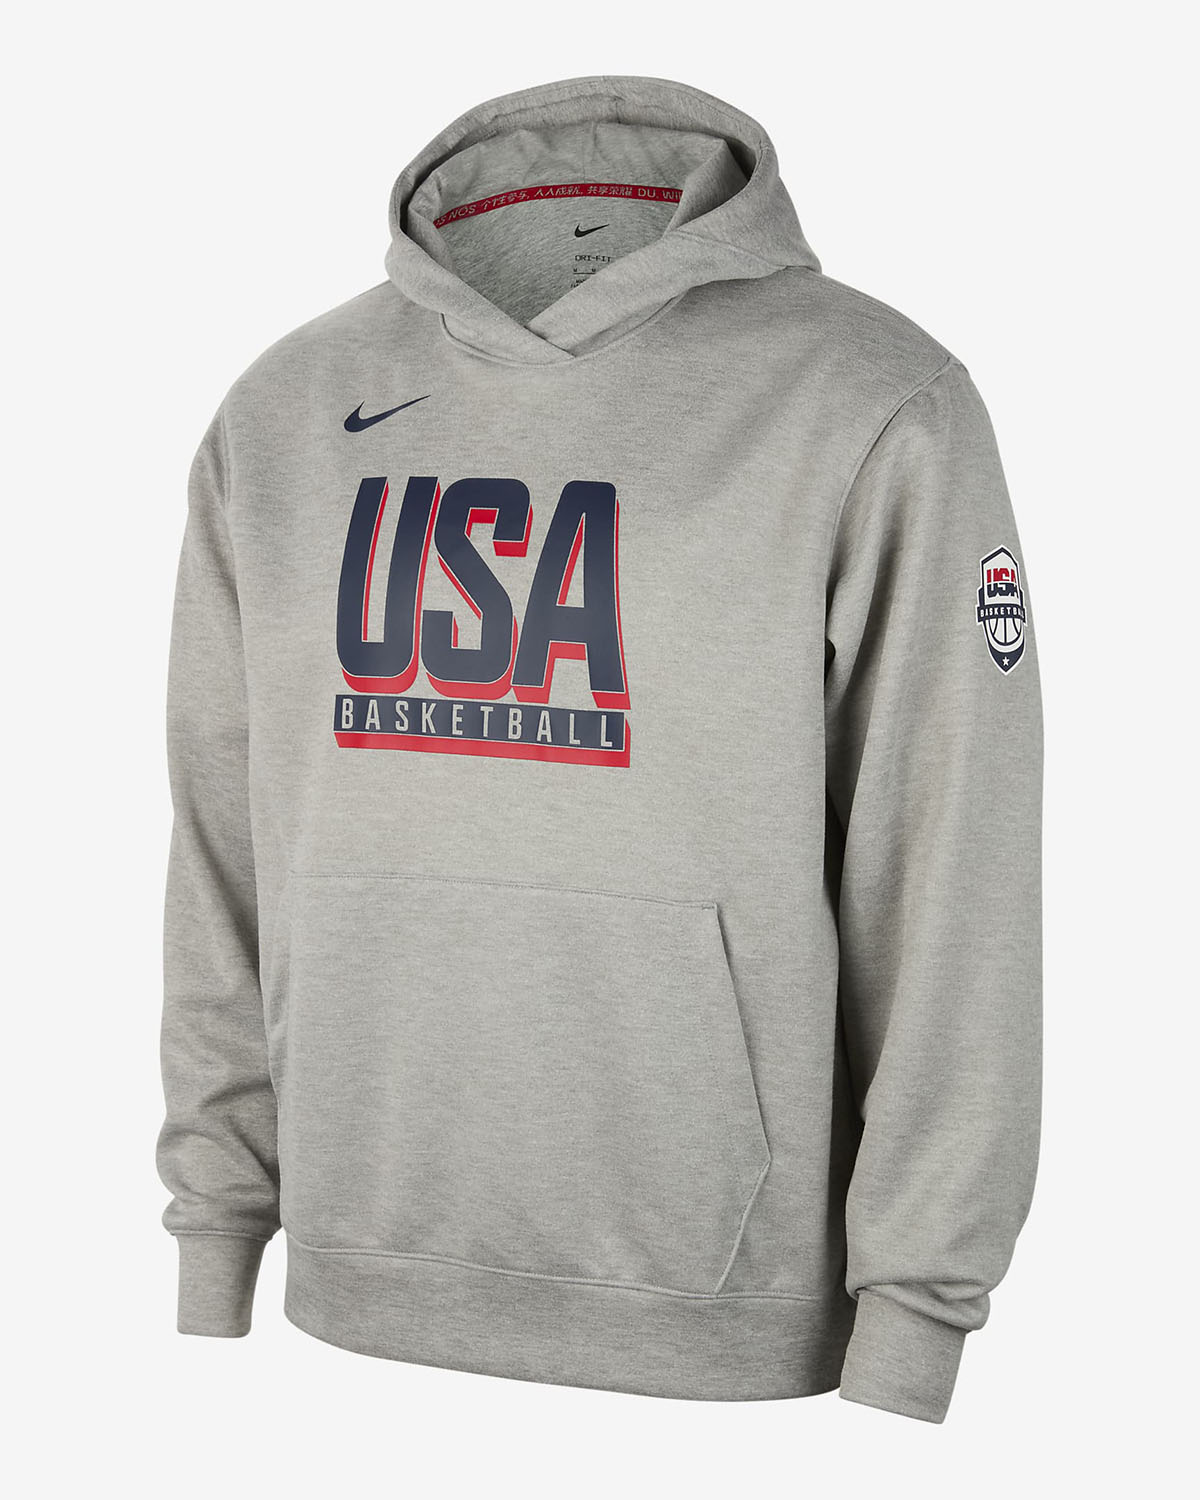 Nike USA Basketball Hoodie Grey